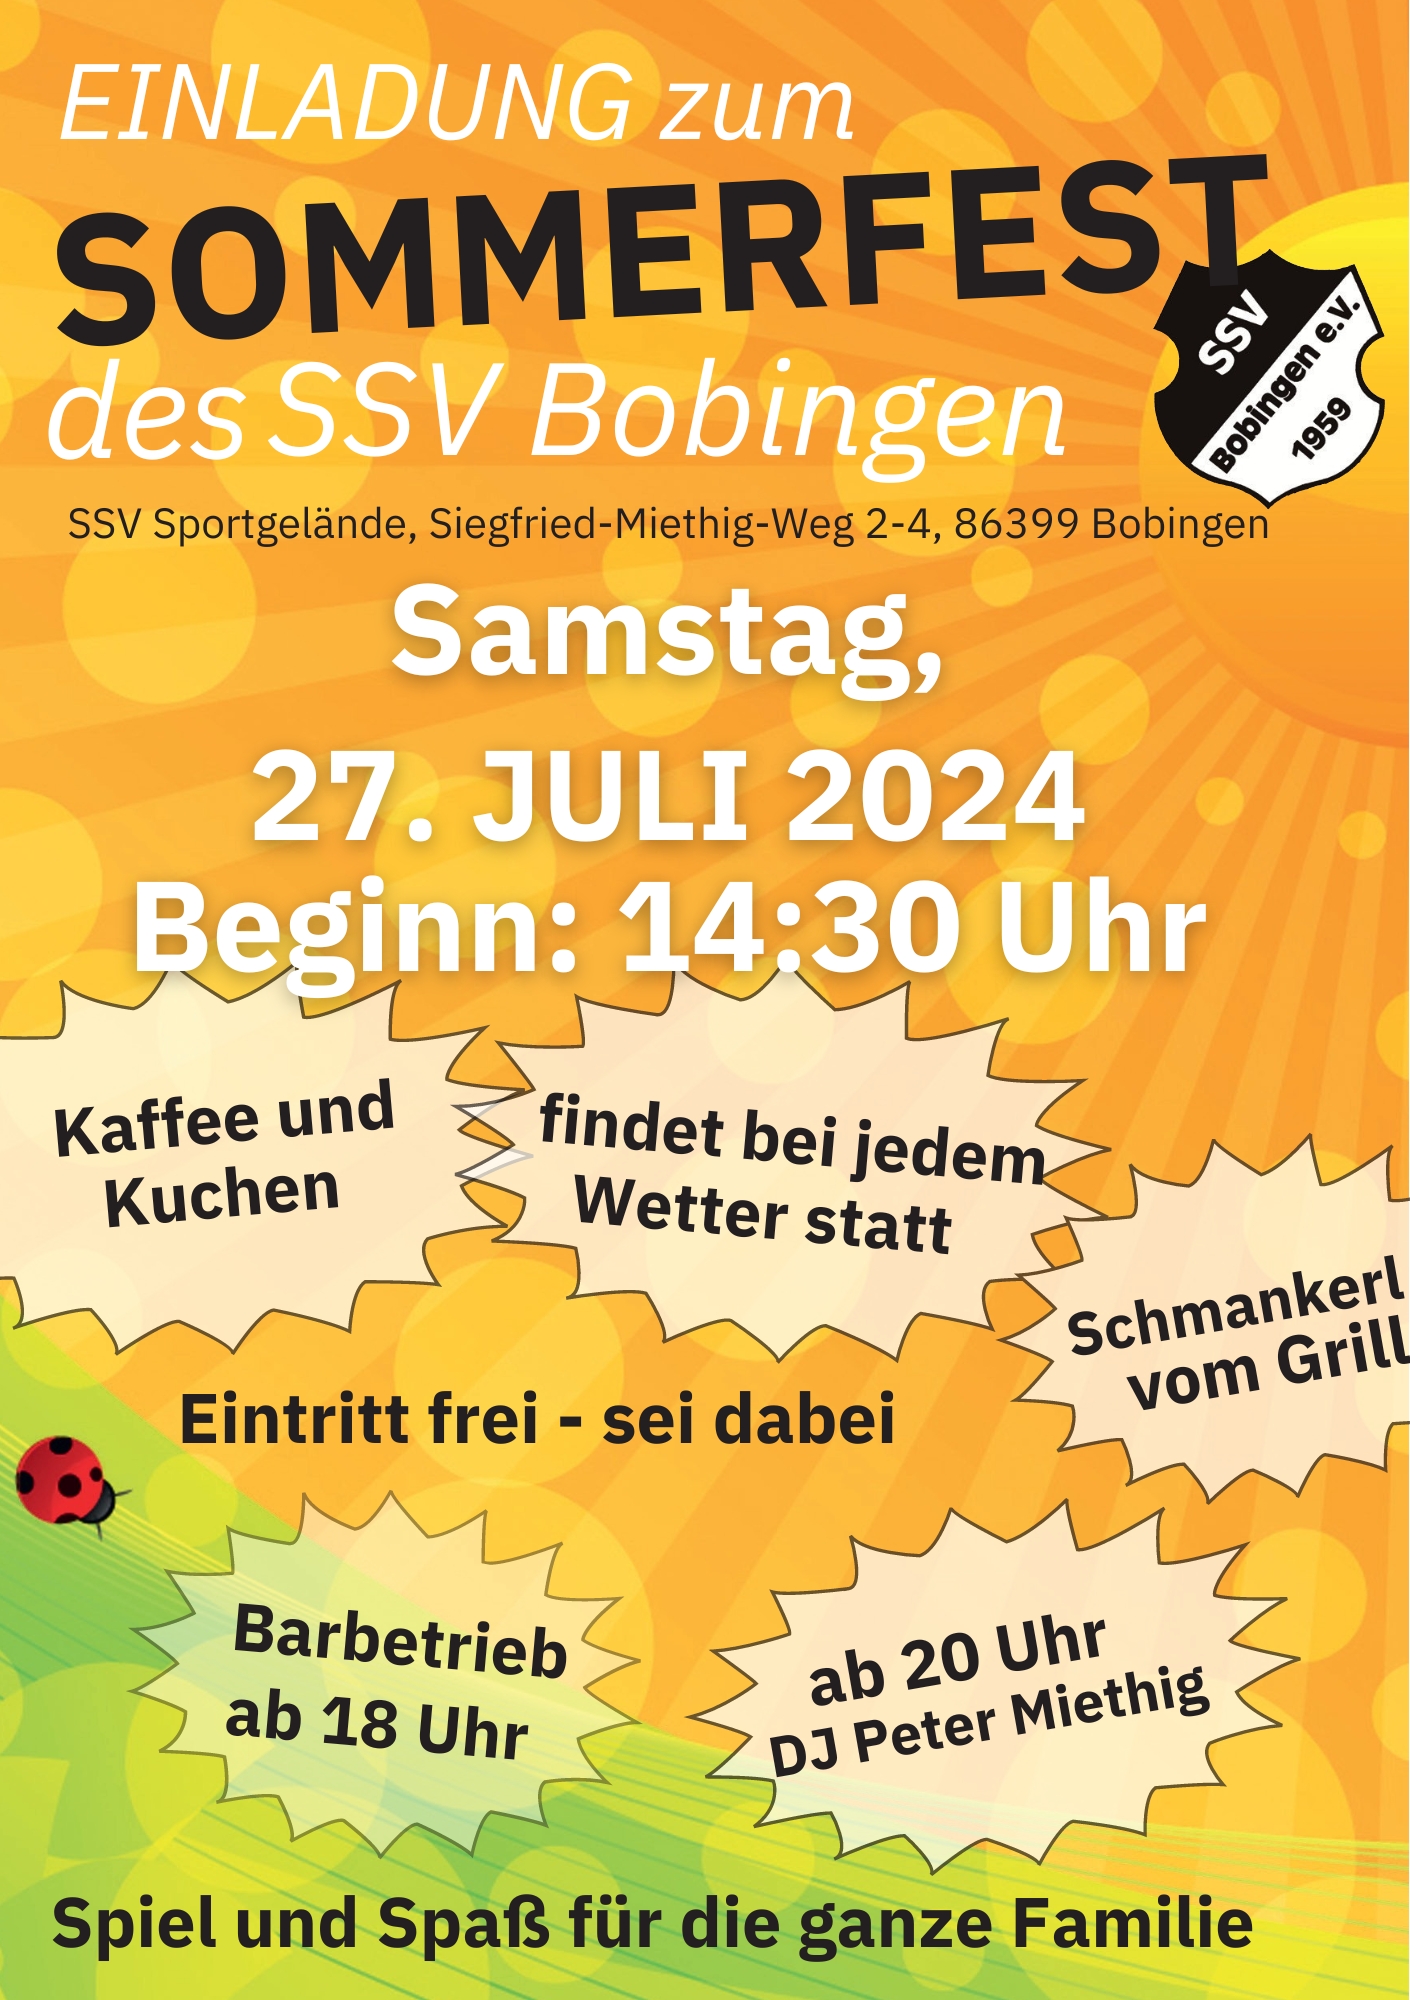 Einladung zum Sommerfest des SSV Bobingen